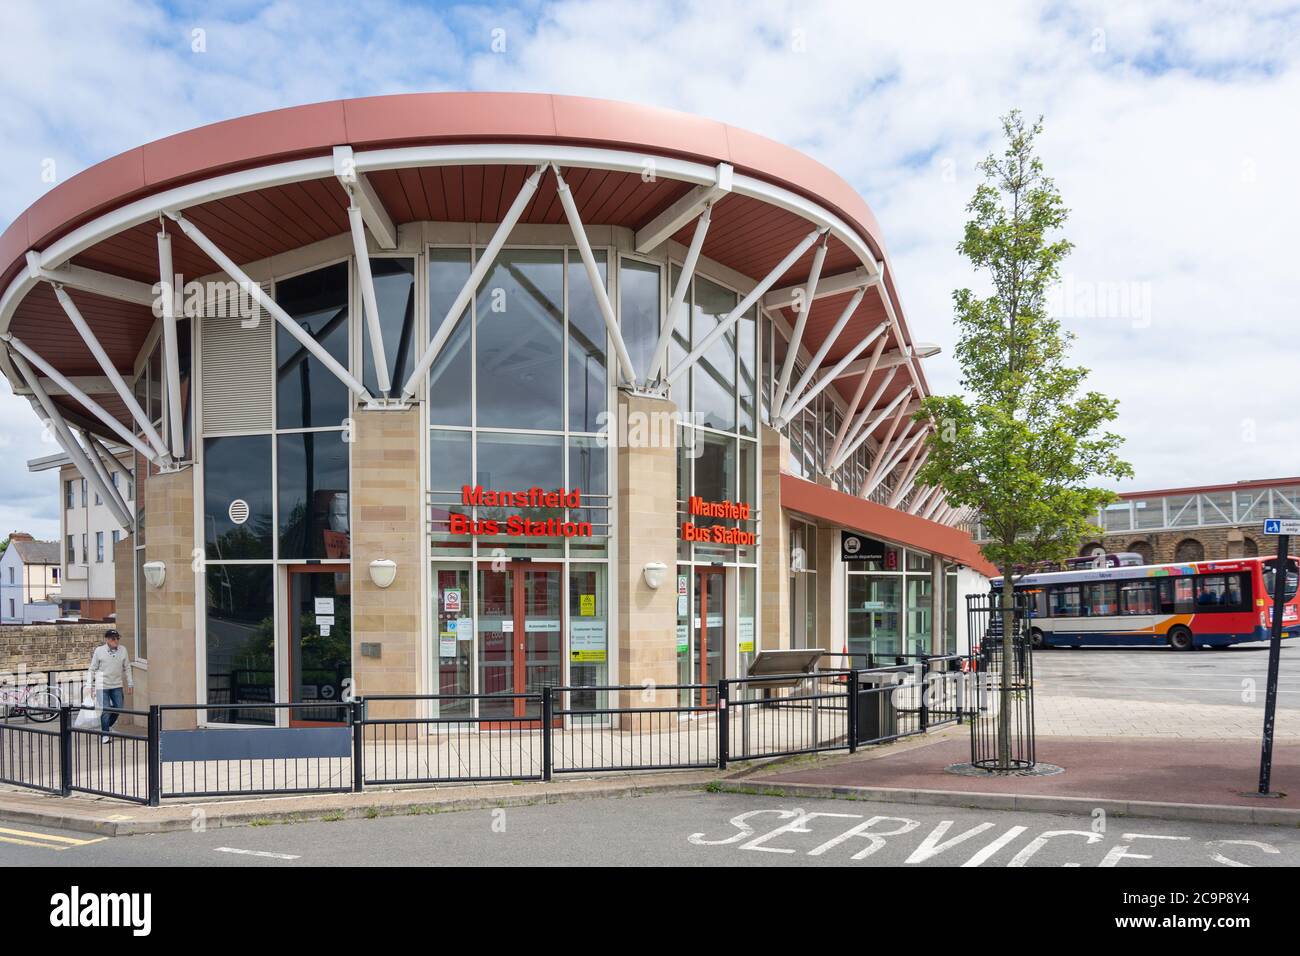 Stazione degli autobus di Mansfield, Quaker Way, Mansfield, Nottinghamshire, Inghilterra, Regno Unito Foto Stock